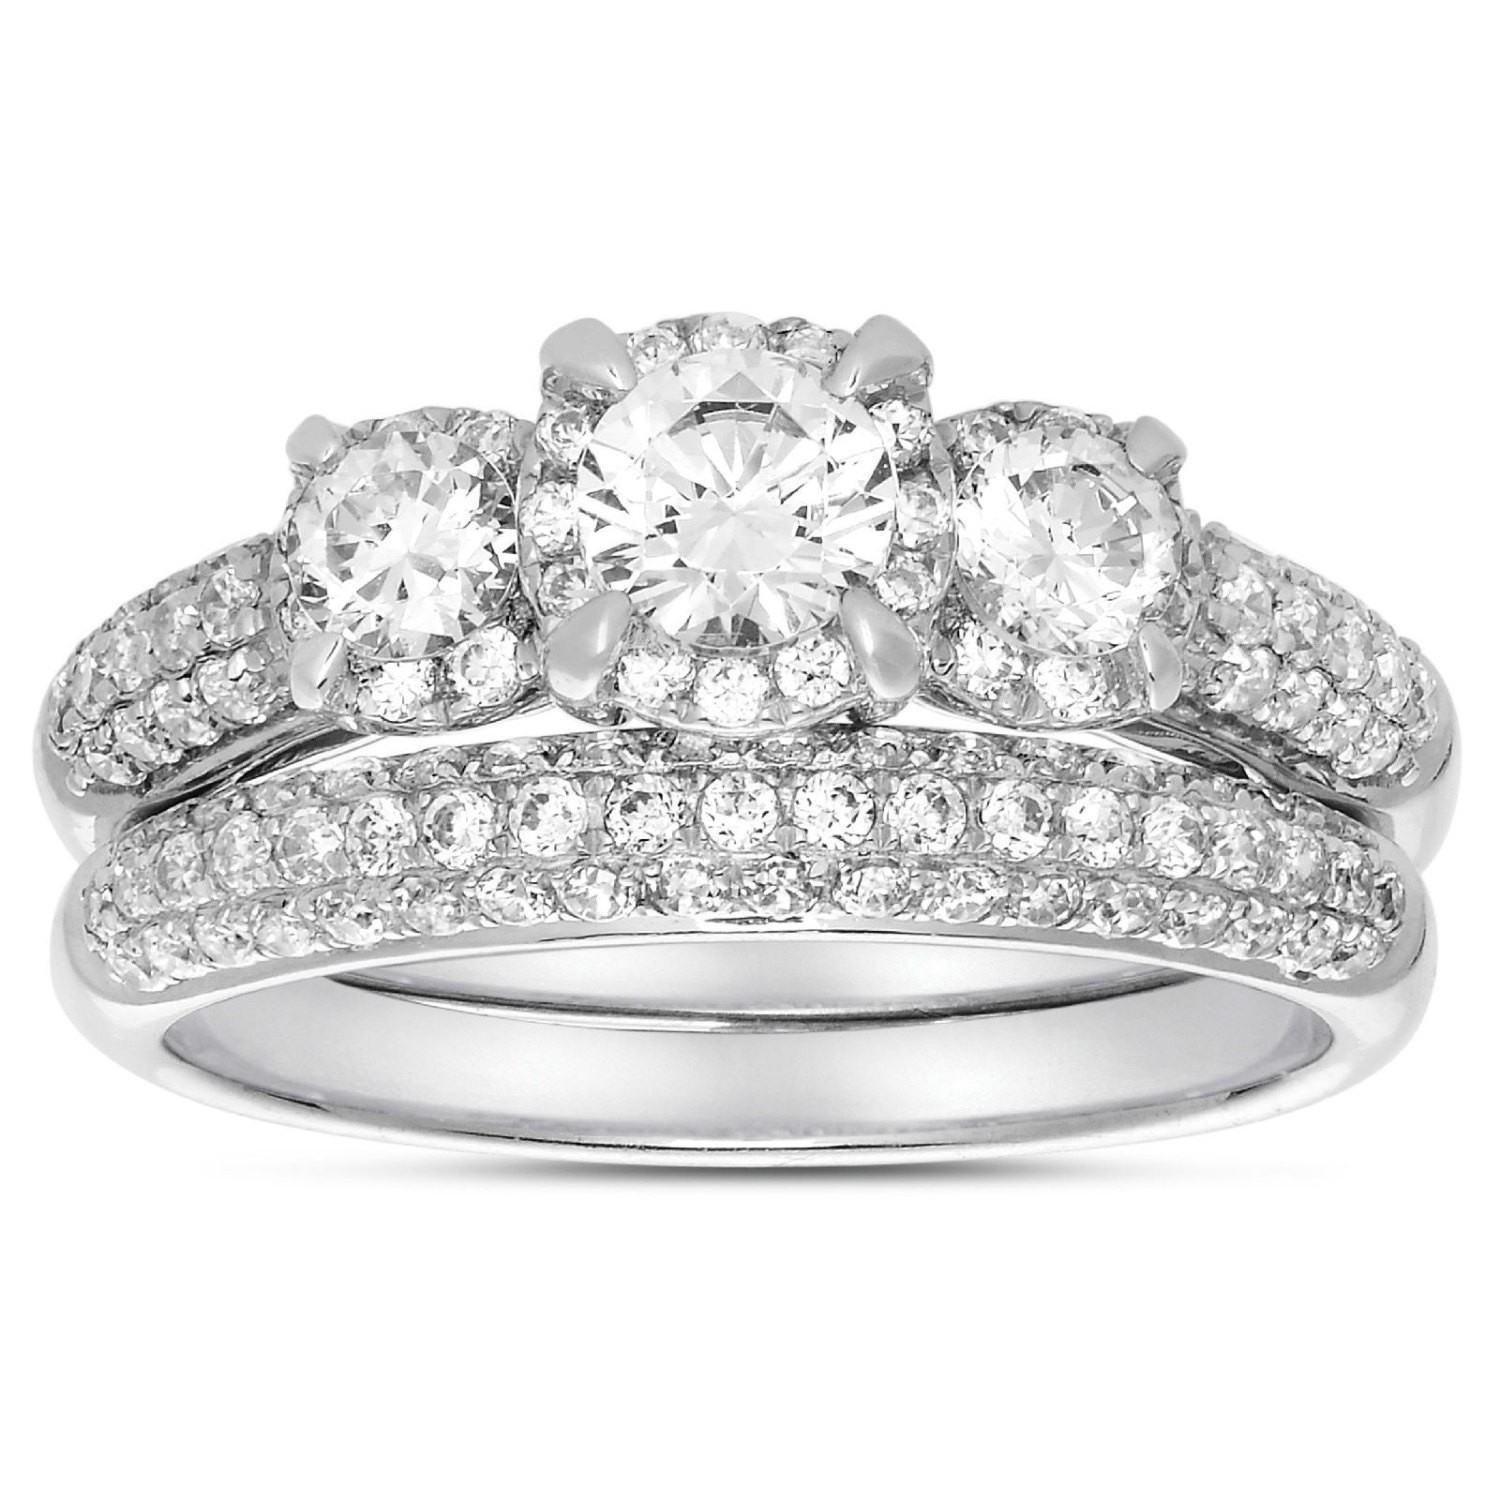 ... Stone Trilogy Round Diamond Wedding Ring Set in White Gold for Women